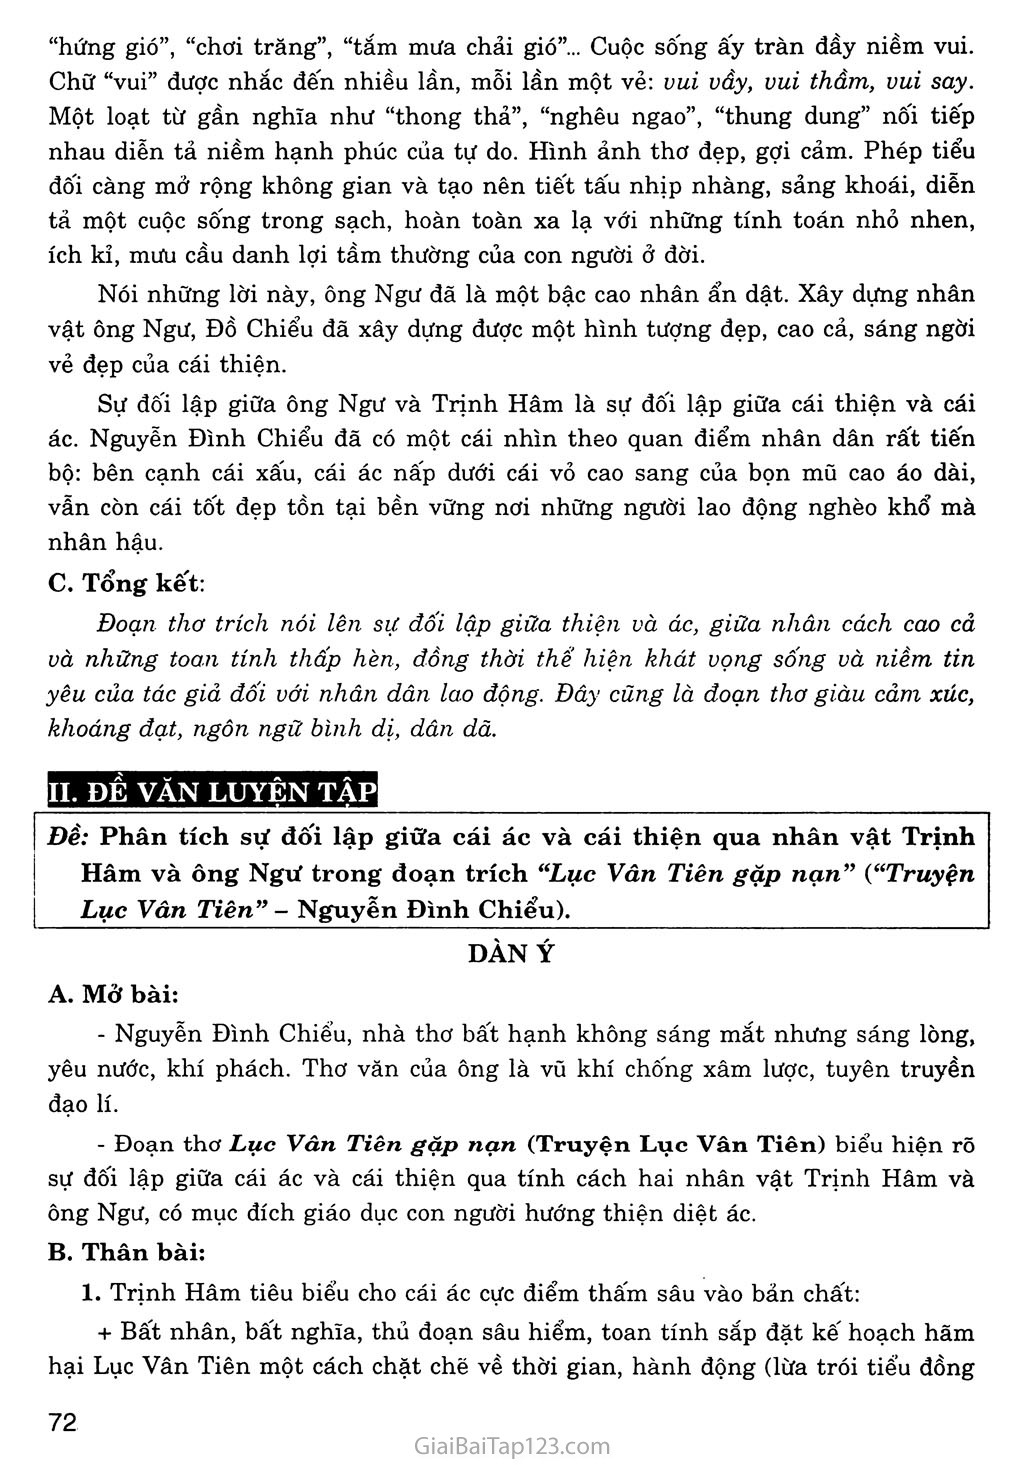 Lục Vân Tiên gặp nạn (trích Truyện Lục Vân Tiên) trang 4